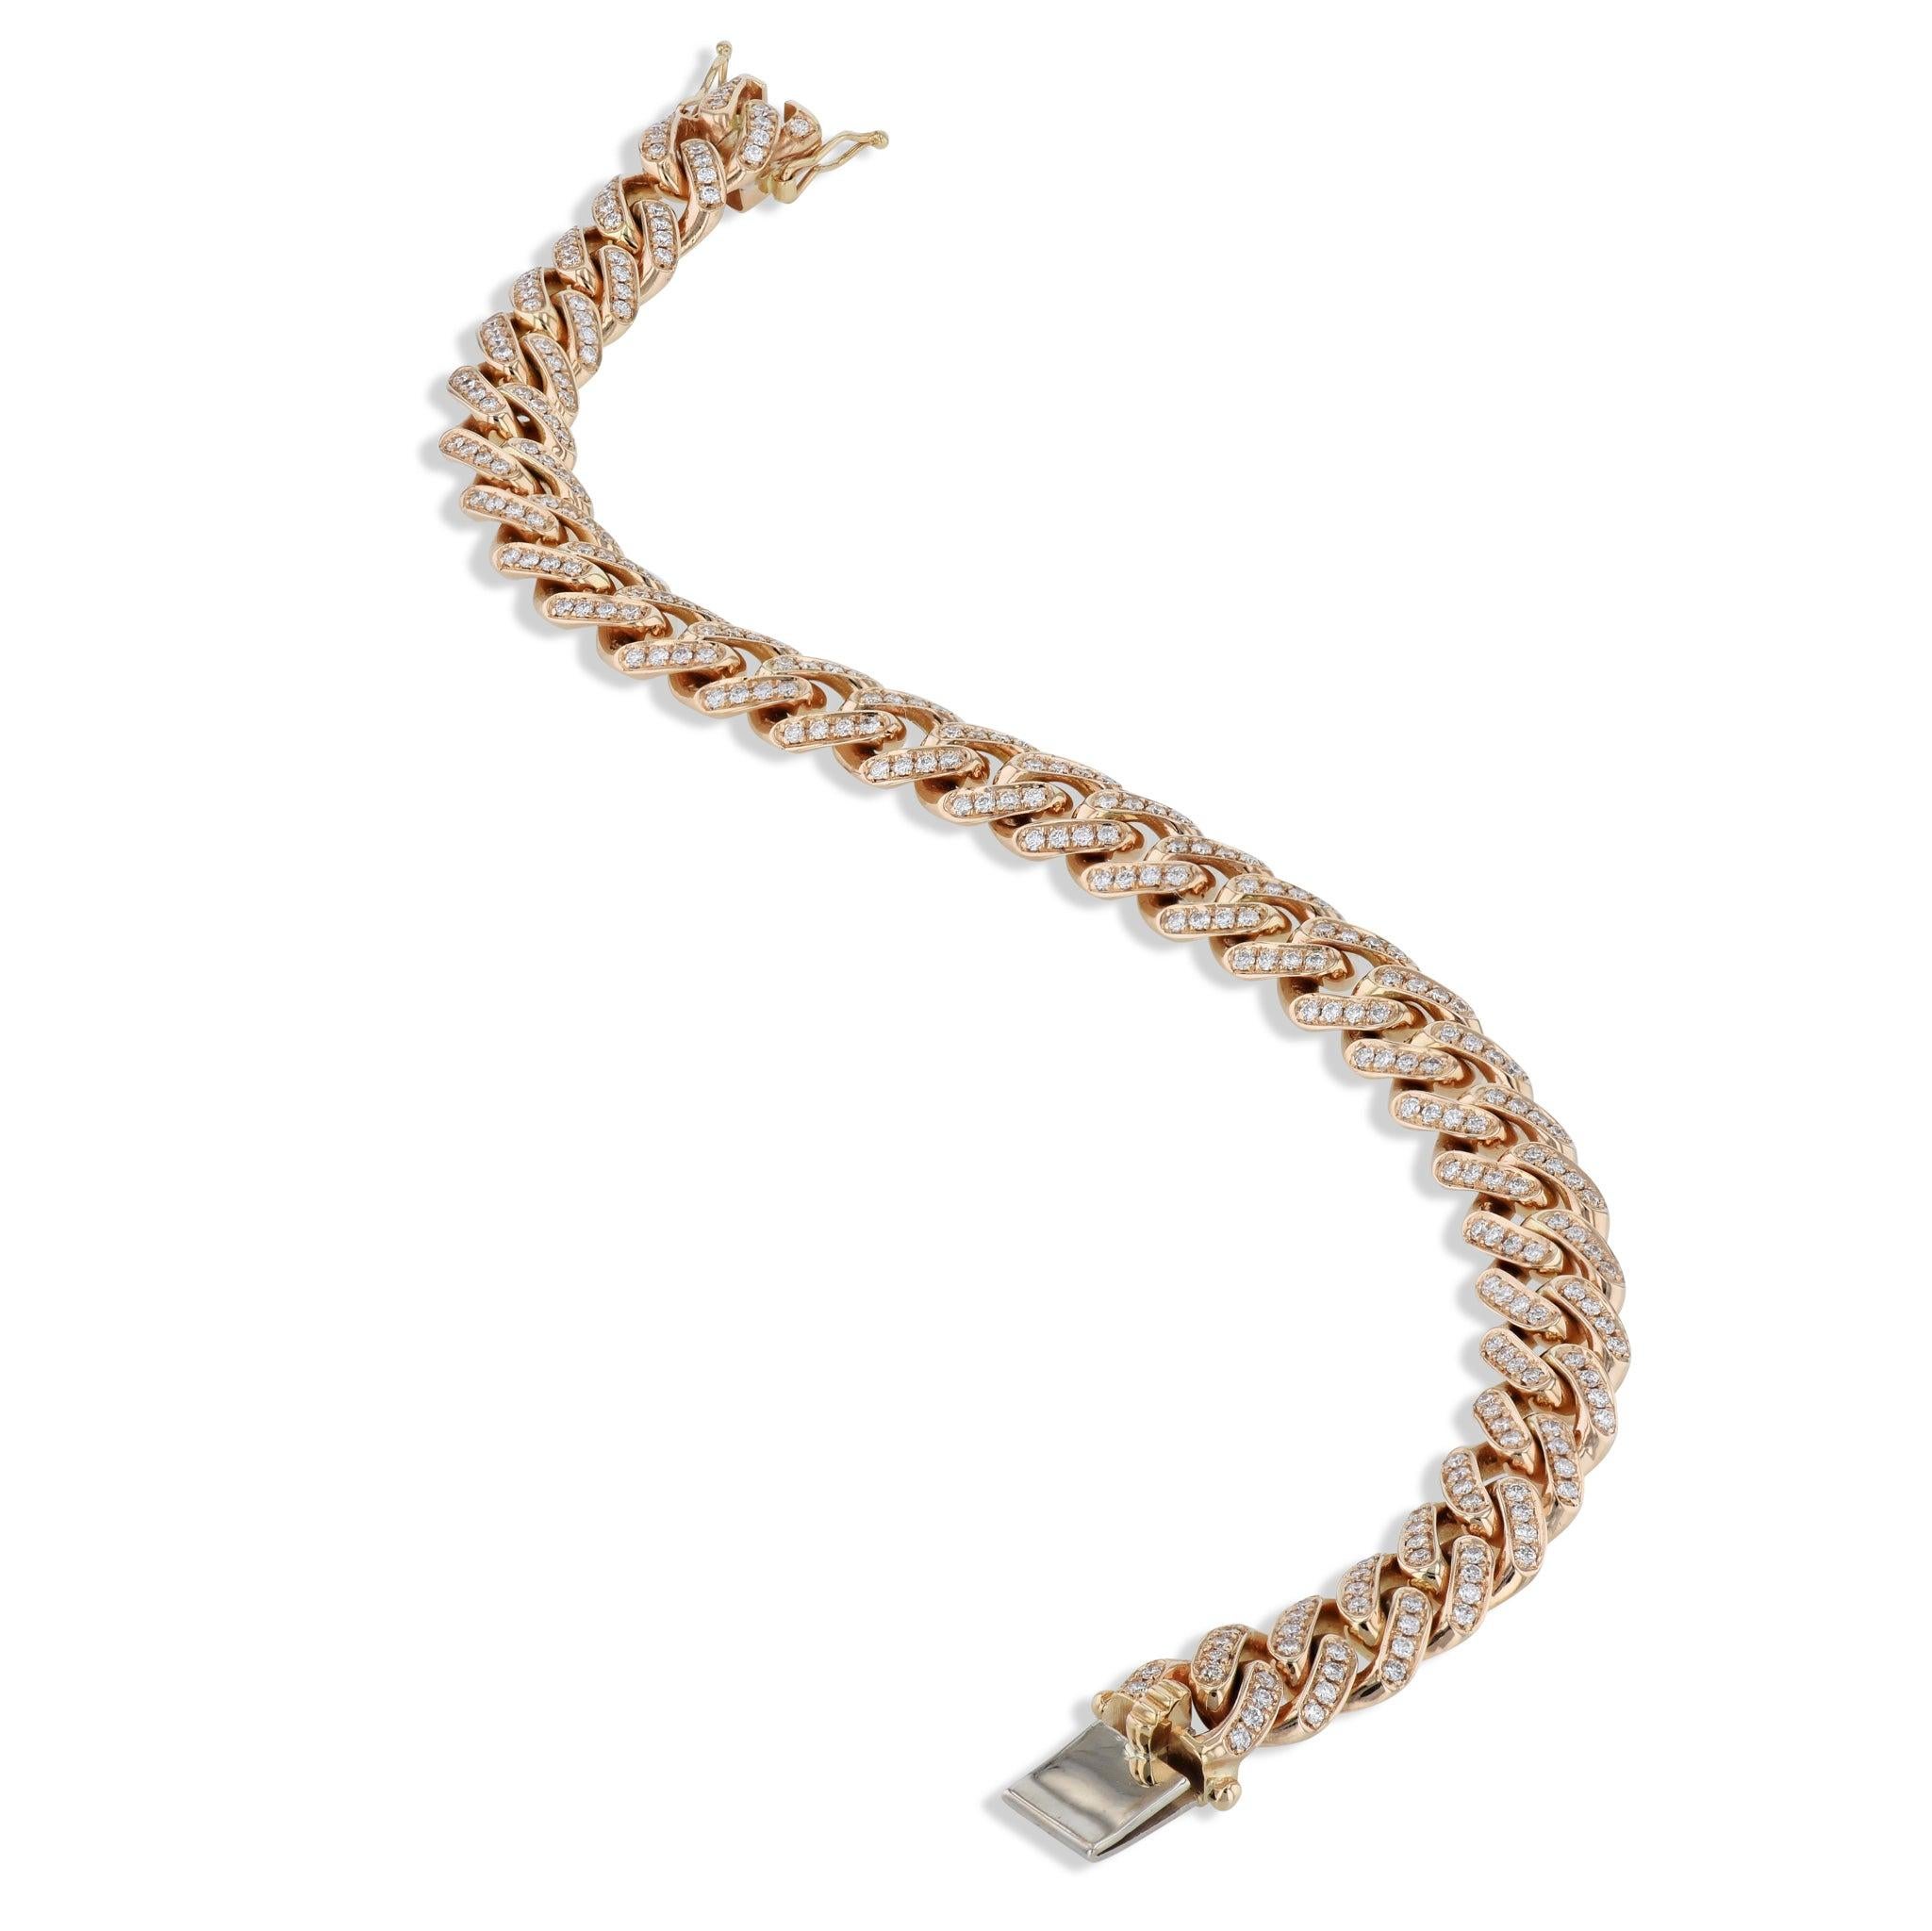 Verwöhnen Sie sich mit unserem luxuriösen Cuban Diamond Rose Gold Link Bracelet! 18kt. Roségold definiert die 266 atemberaubenden Diamanten, die meisterhaft im Stil eines Cuban Link angeordnet sind. Dieses exquisite Stück aus der H&H Collection'S